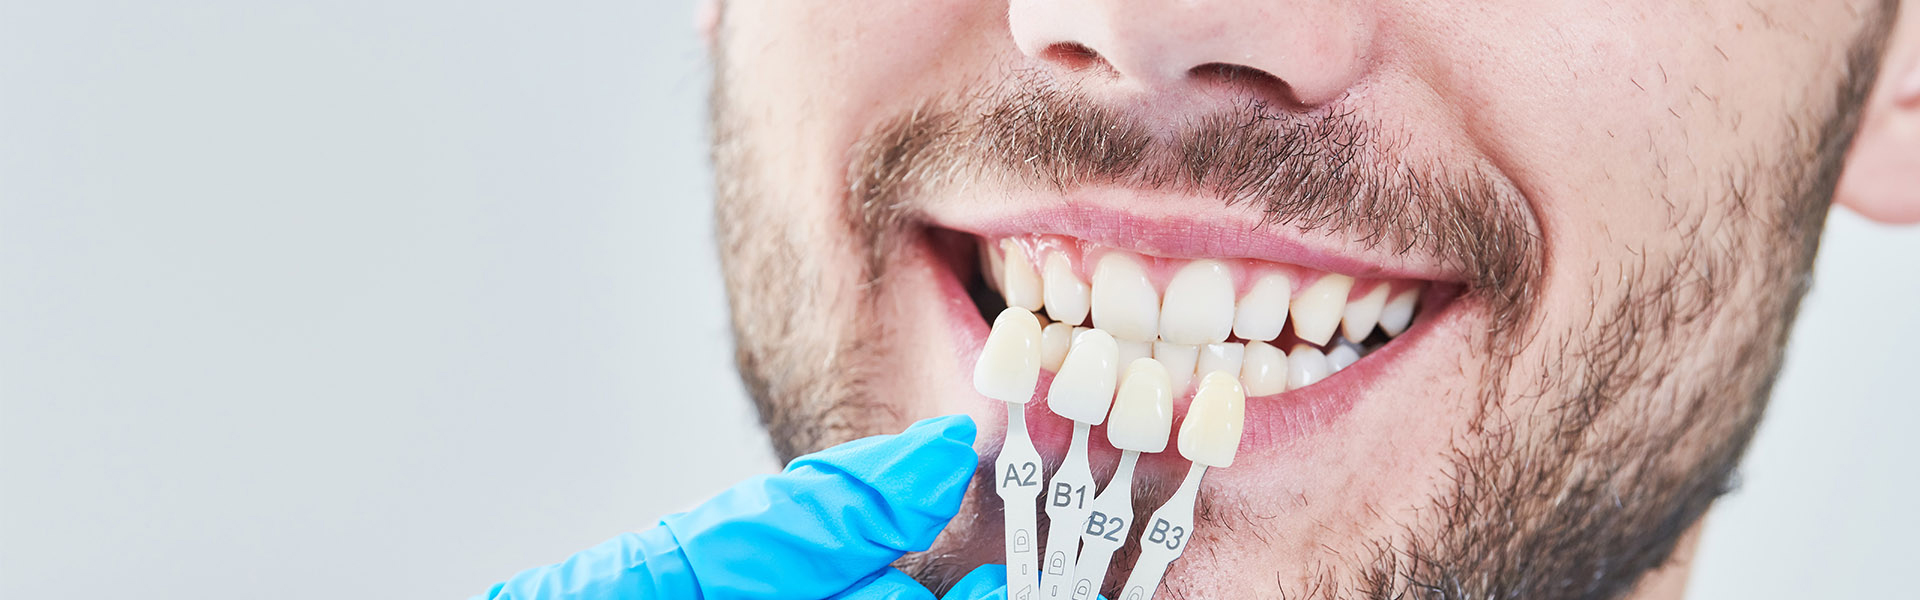 Dental Veneers Help to Treat Various Cosmetic Conditions